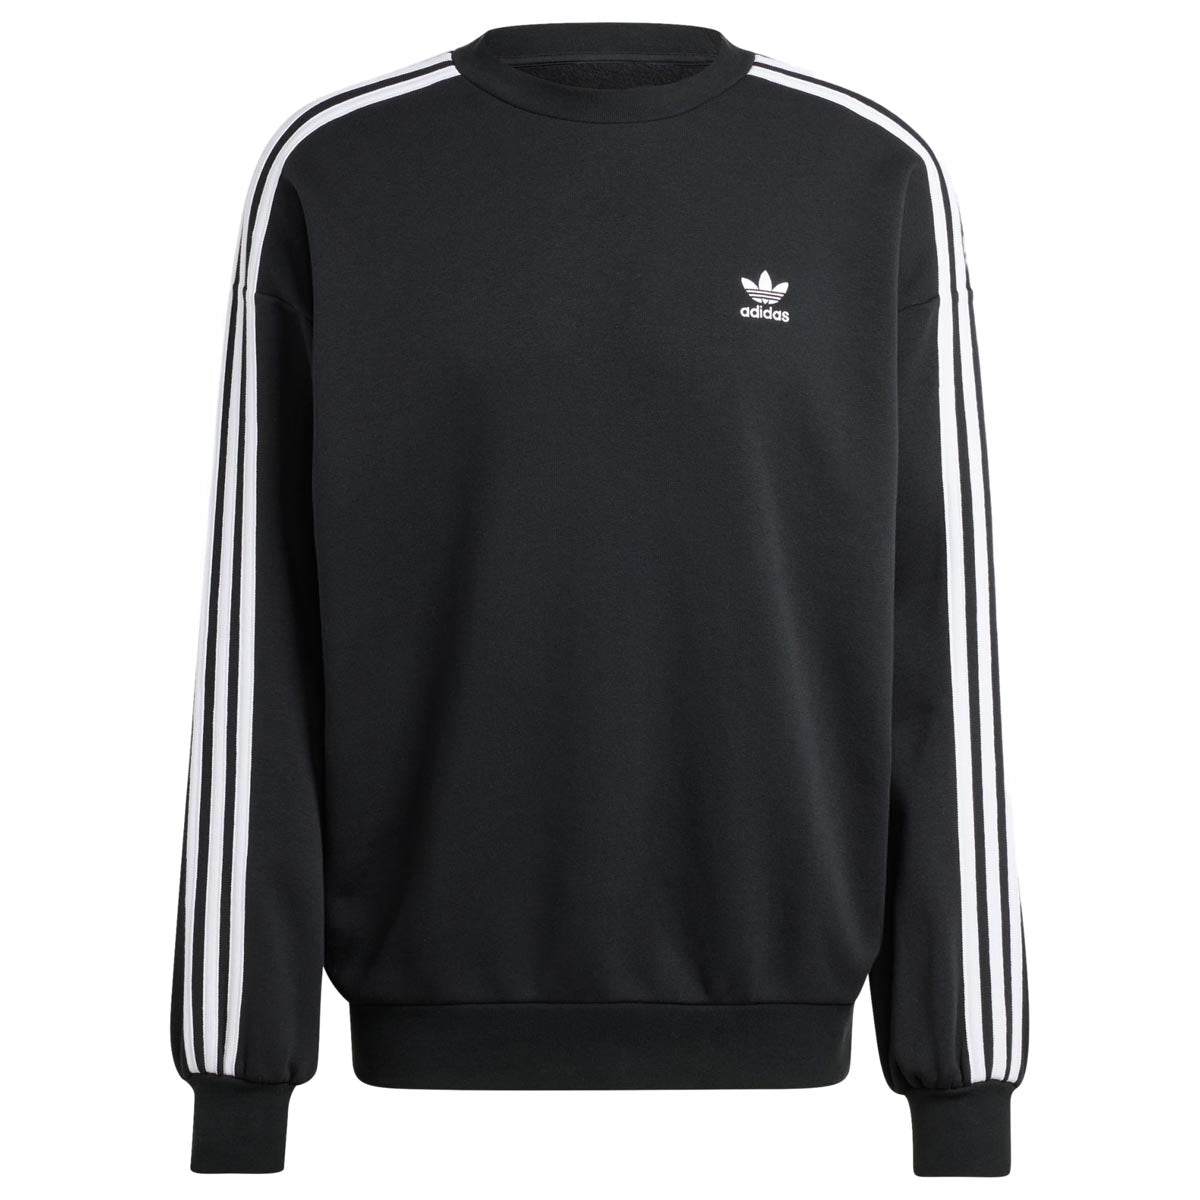 Adidas Originals Adicolor Oversized Crew Sweater - Black image 4